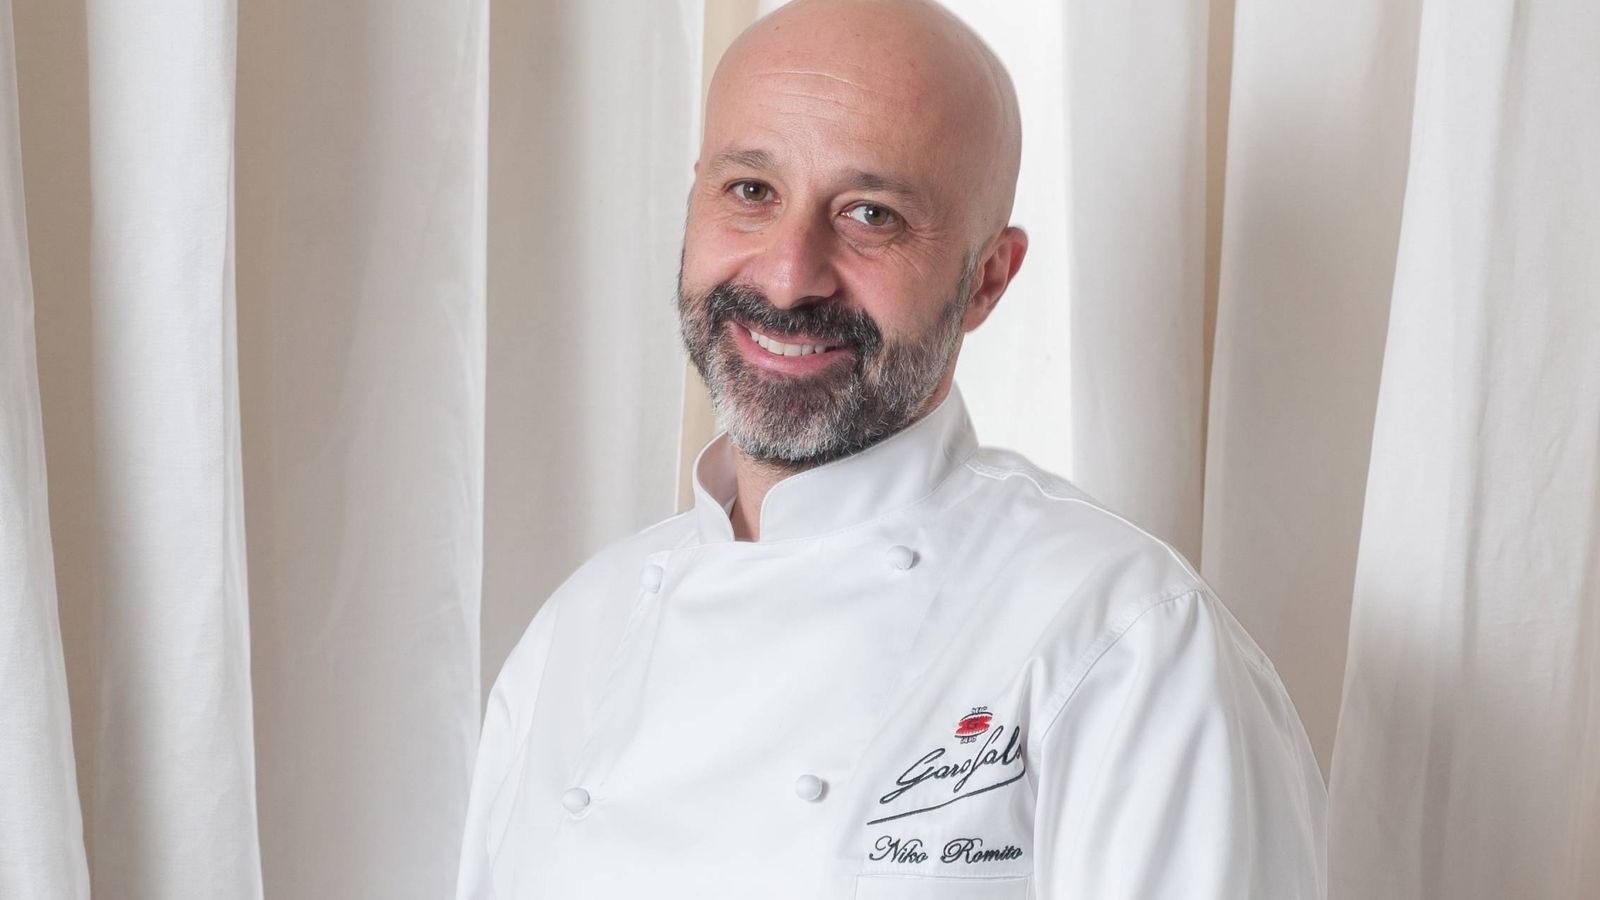 Foto: El chef Niko Romito. (Massimiliano Polles. Garofalo)